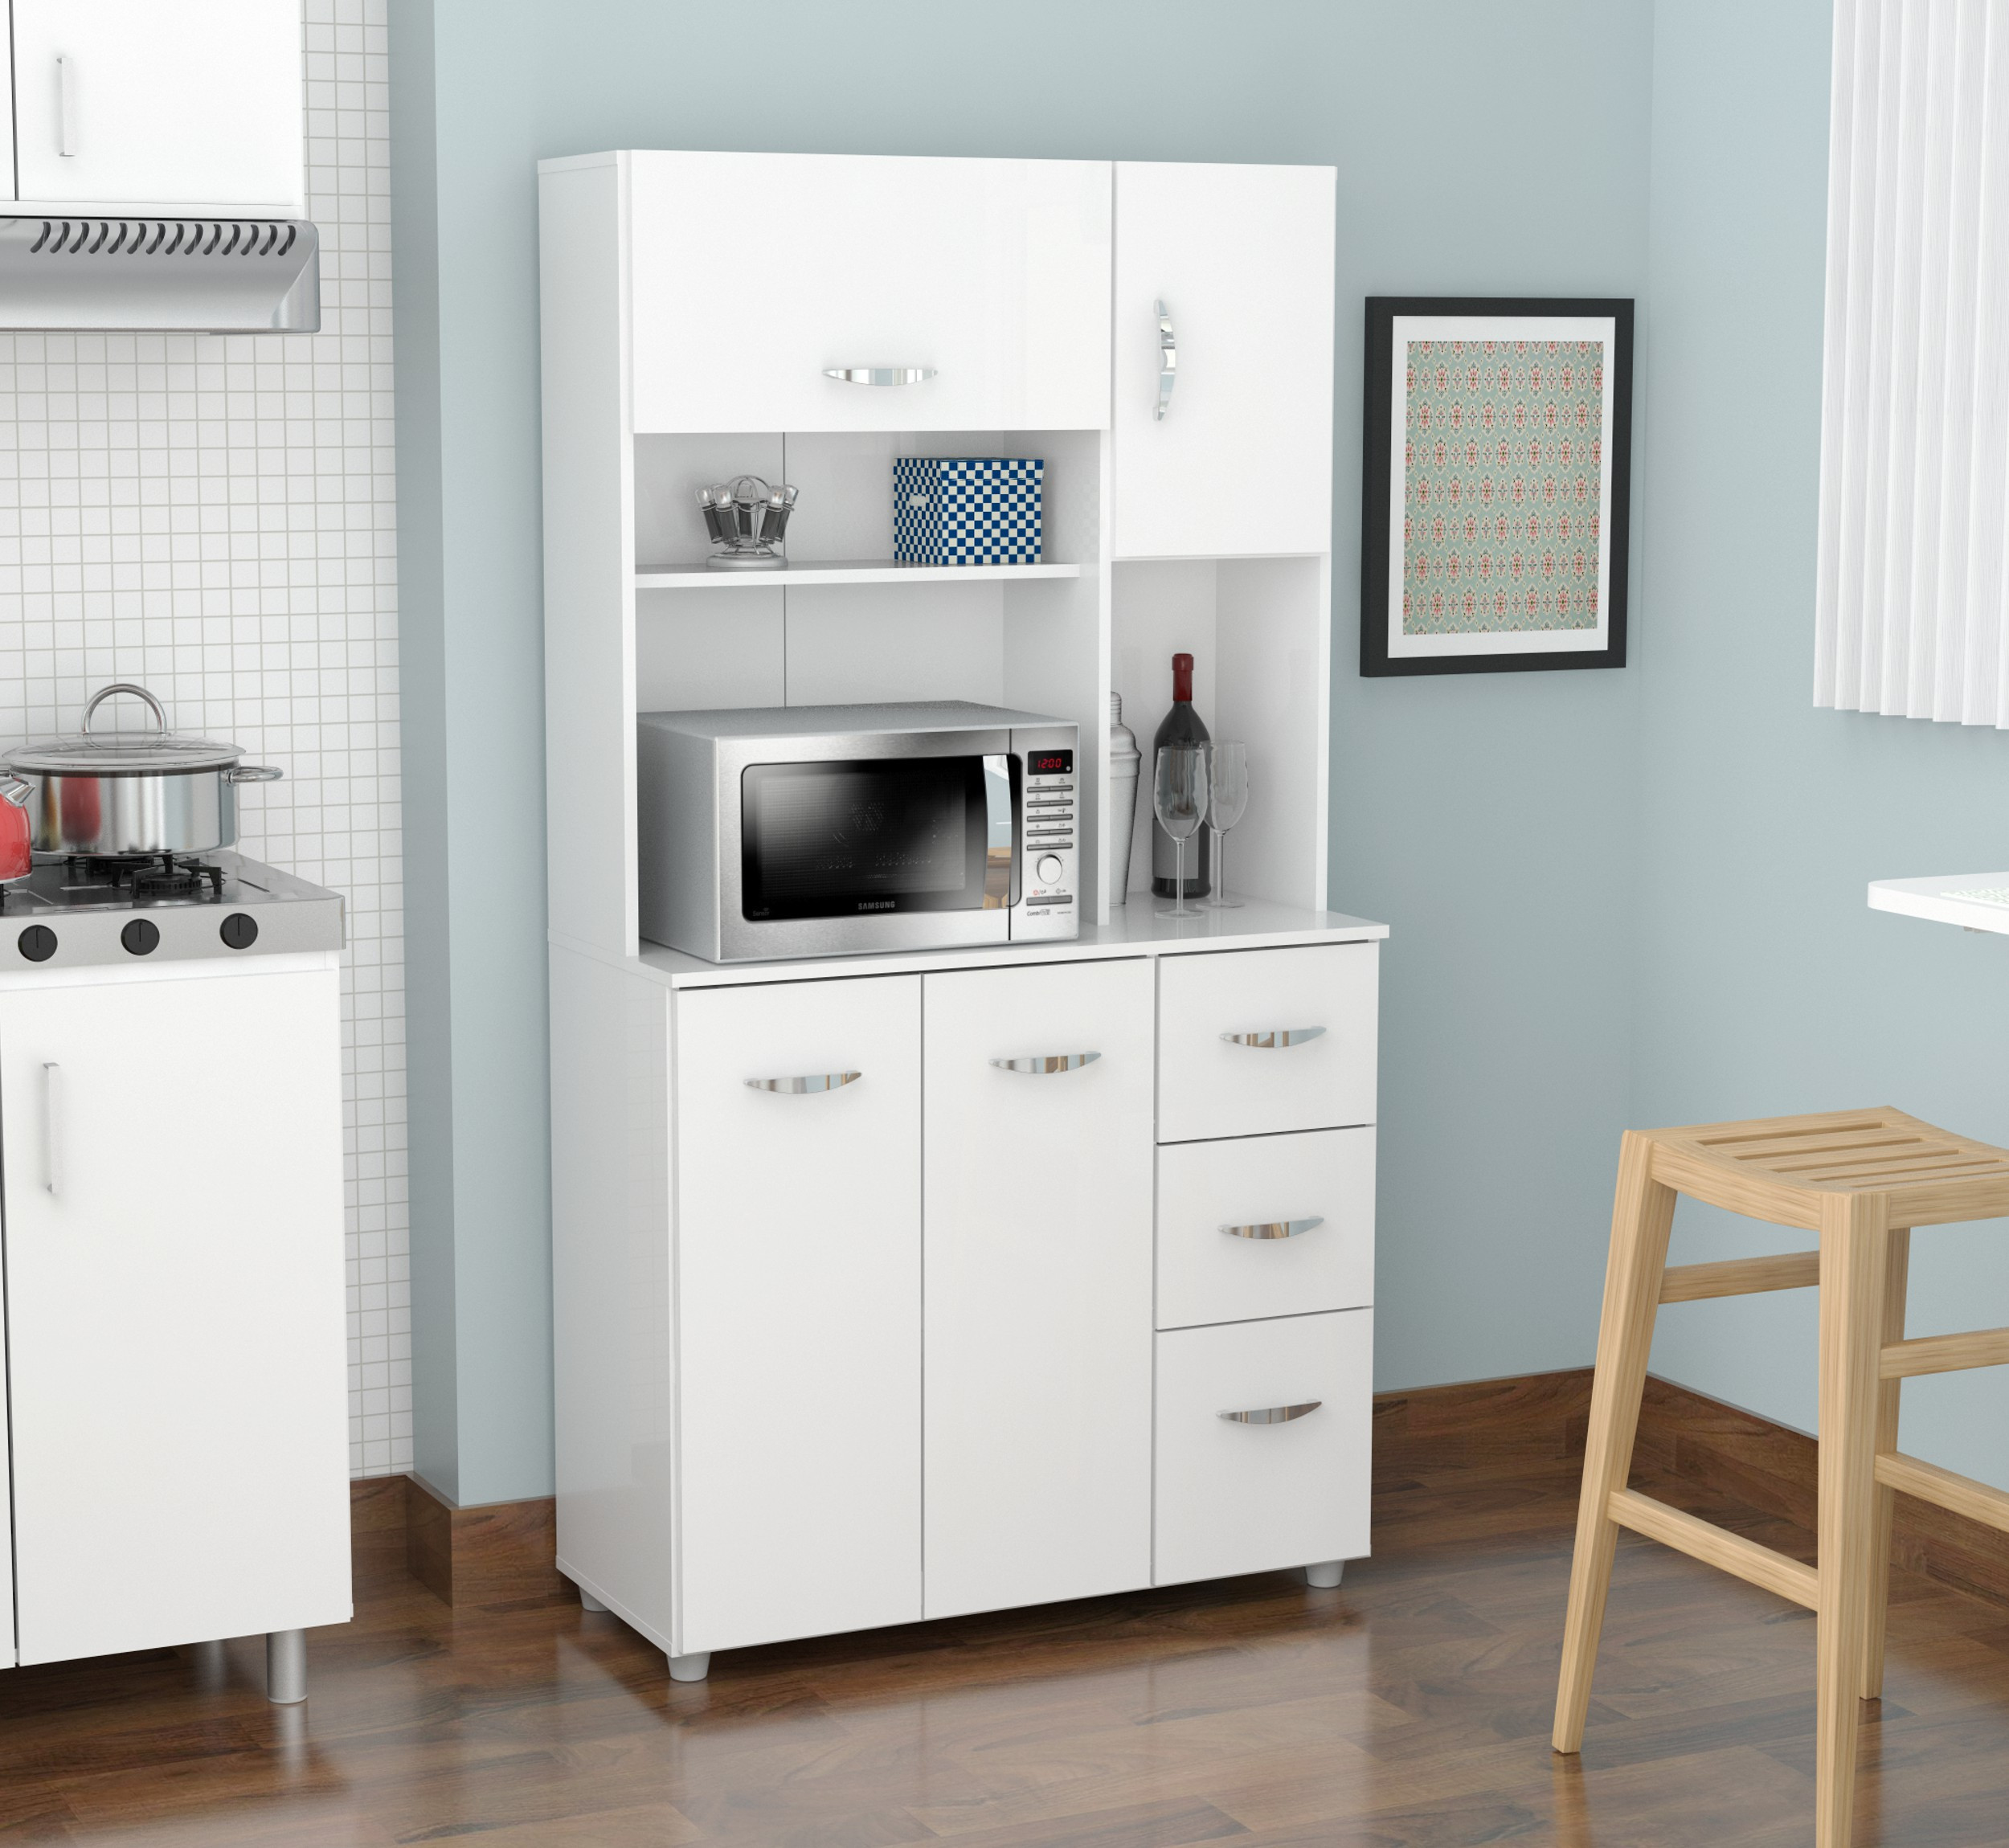 Walmart Kitchen Storage Cabinets
 Inval 4 door Laminate Microwave Kitchen Cabinet Laricina